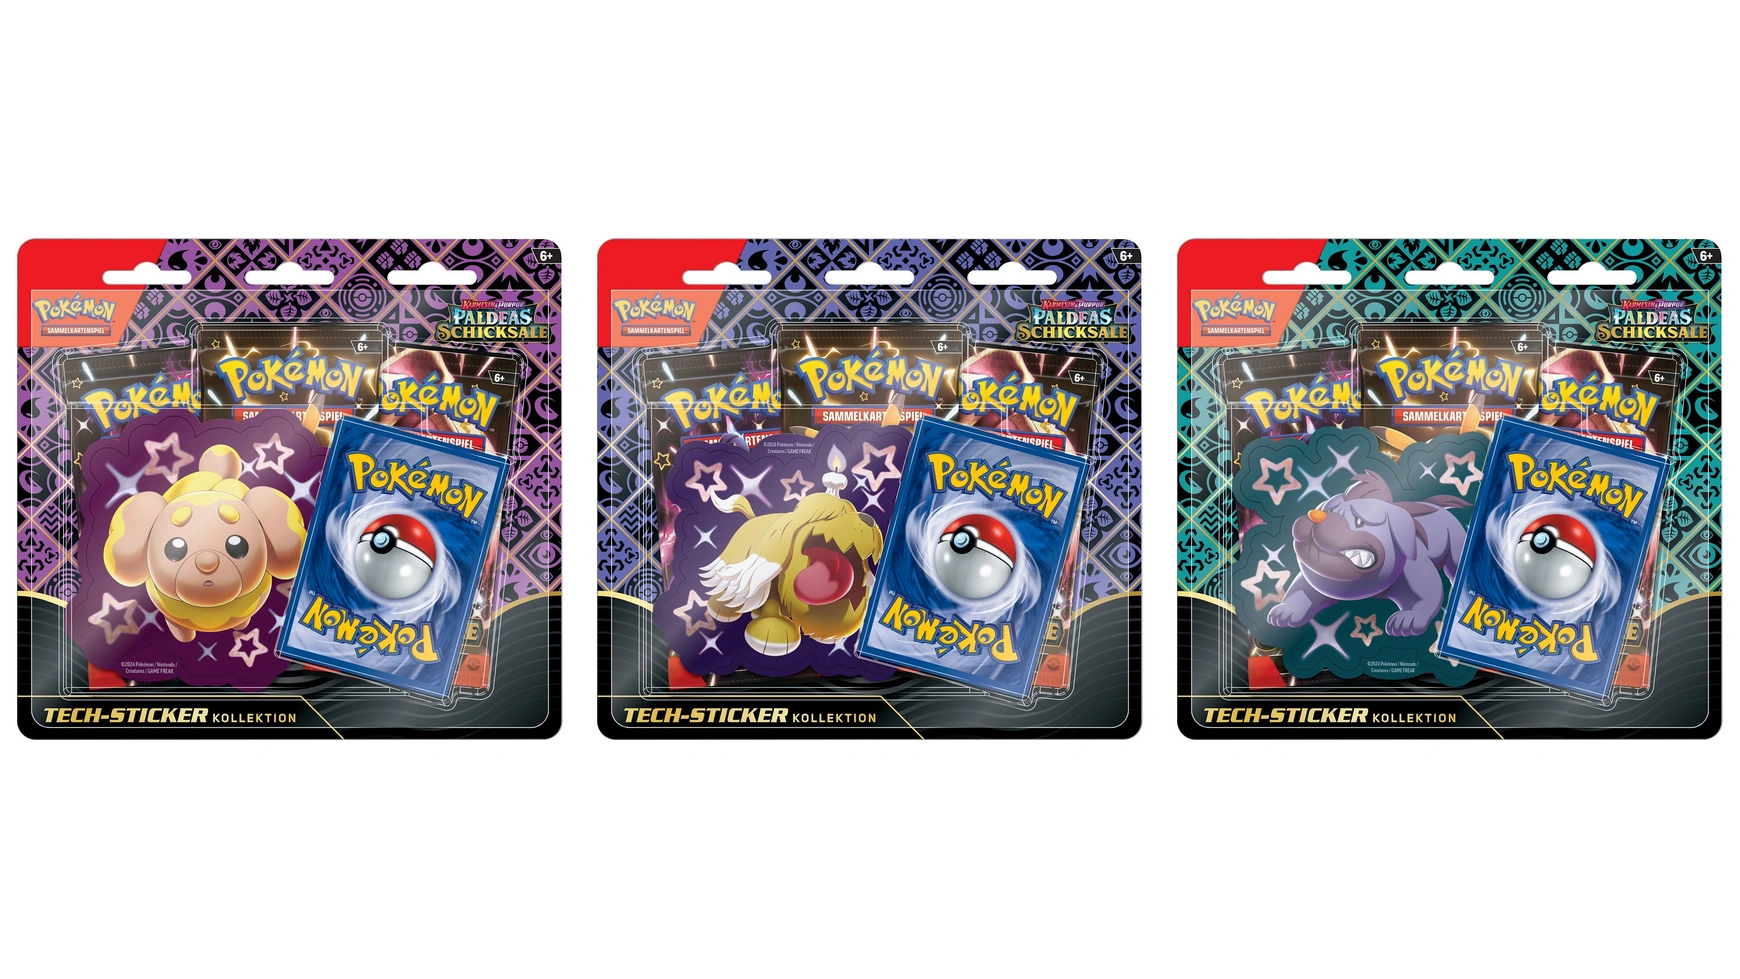 Коллекционная карточная игра Pokémon коллекция технических наклеек KP045, в ассортименте, 1 шт